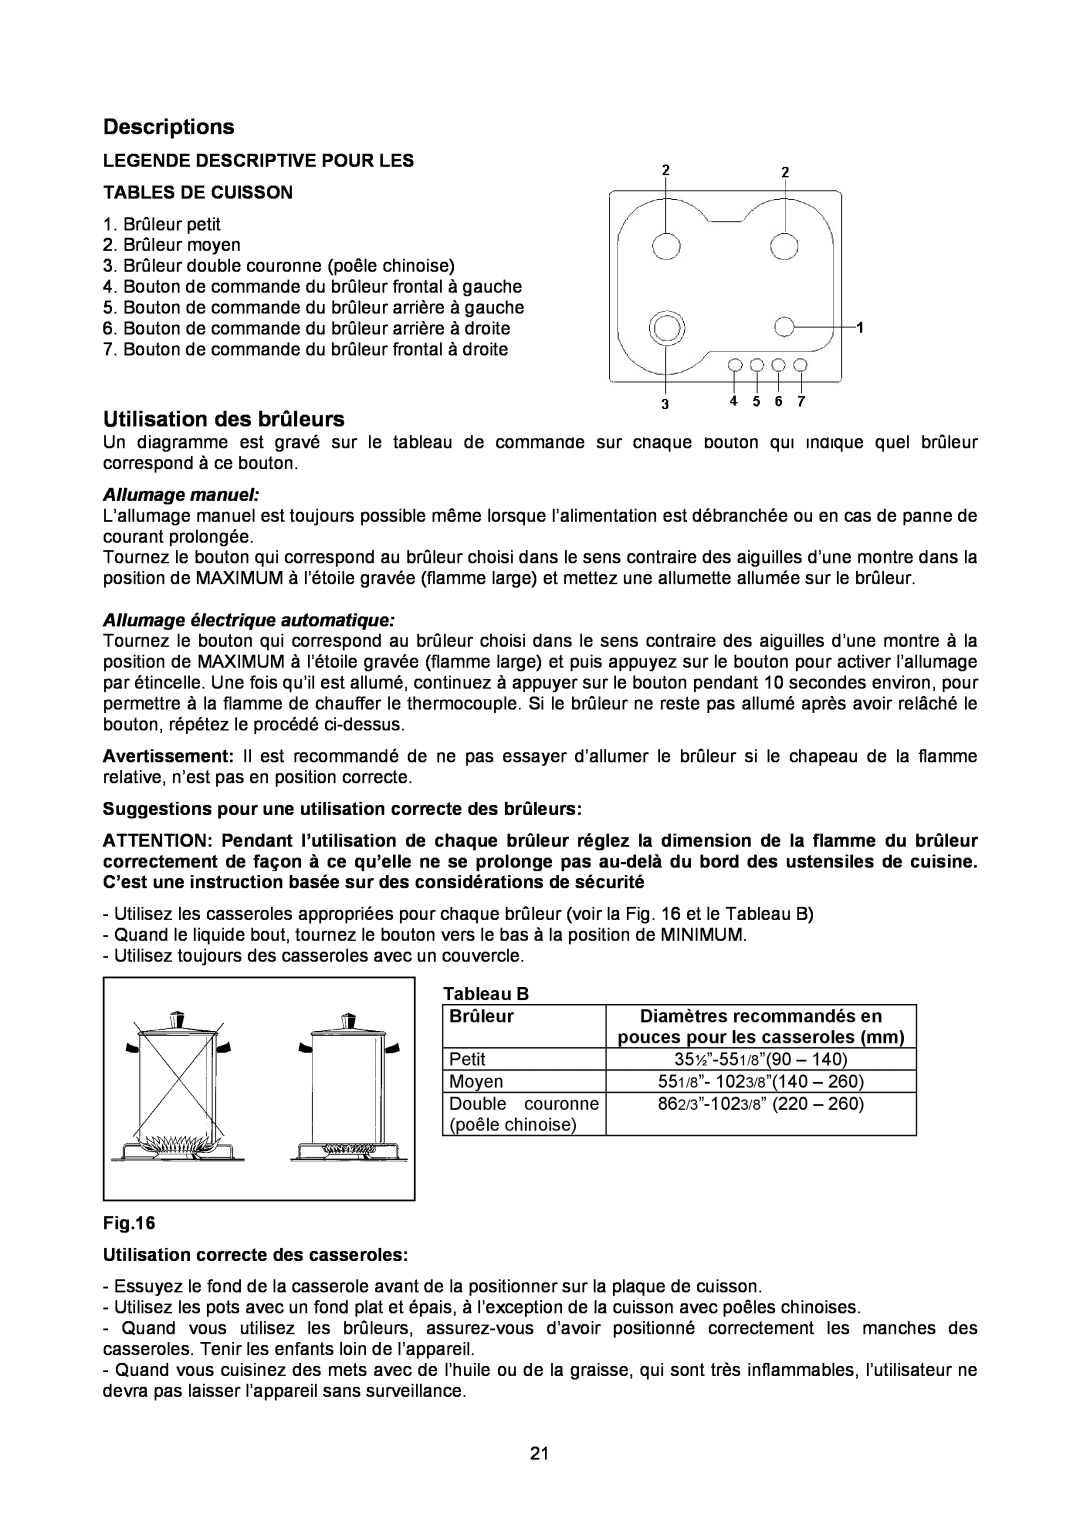 Bertazzoni P24400X Utilisation des brûleurs, Allumage manuel, Allumage électrique automatique, Descriptions, Tableau B 